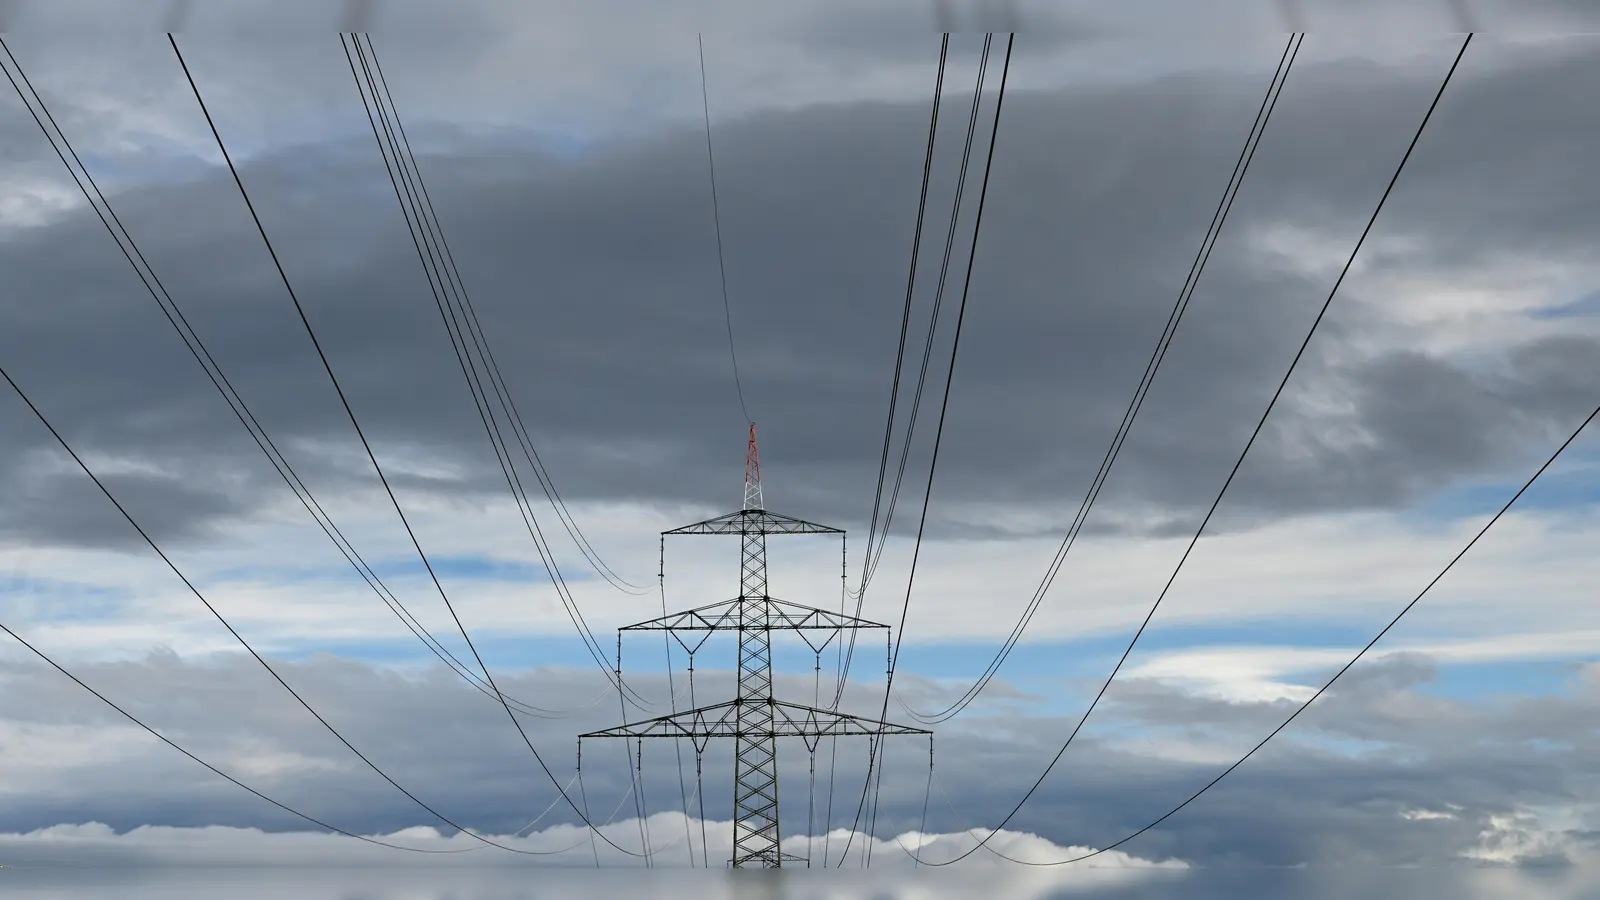 Engpässe in den Netzen sorgen immer wieder dafür, dass Strom nicht abtransportiert werden kann. Das soll sich im Landkreis Neustadt/Aisch-Bad Windsheim ändern. (Symbolbild: Jim Albright)